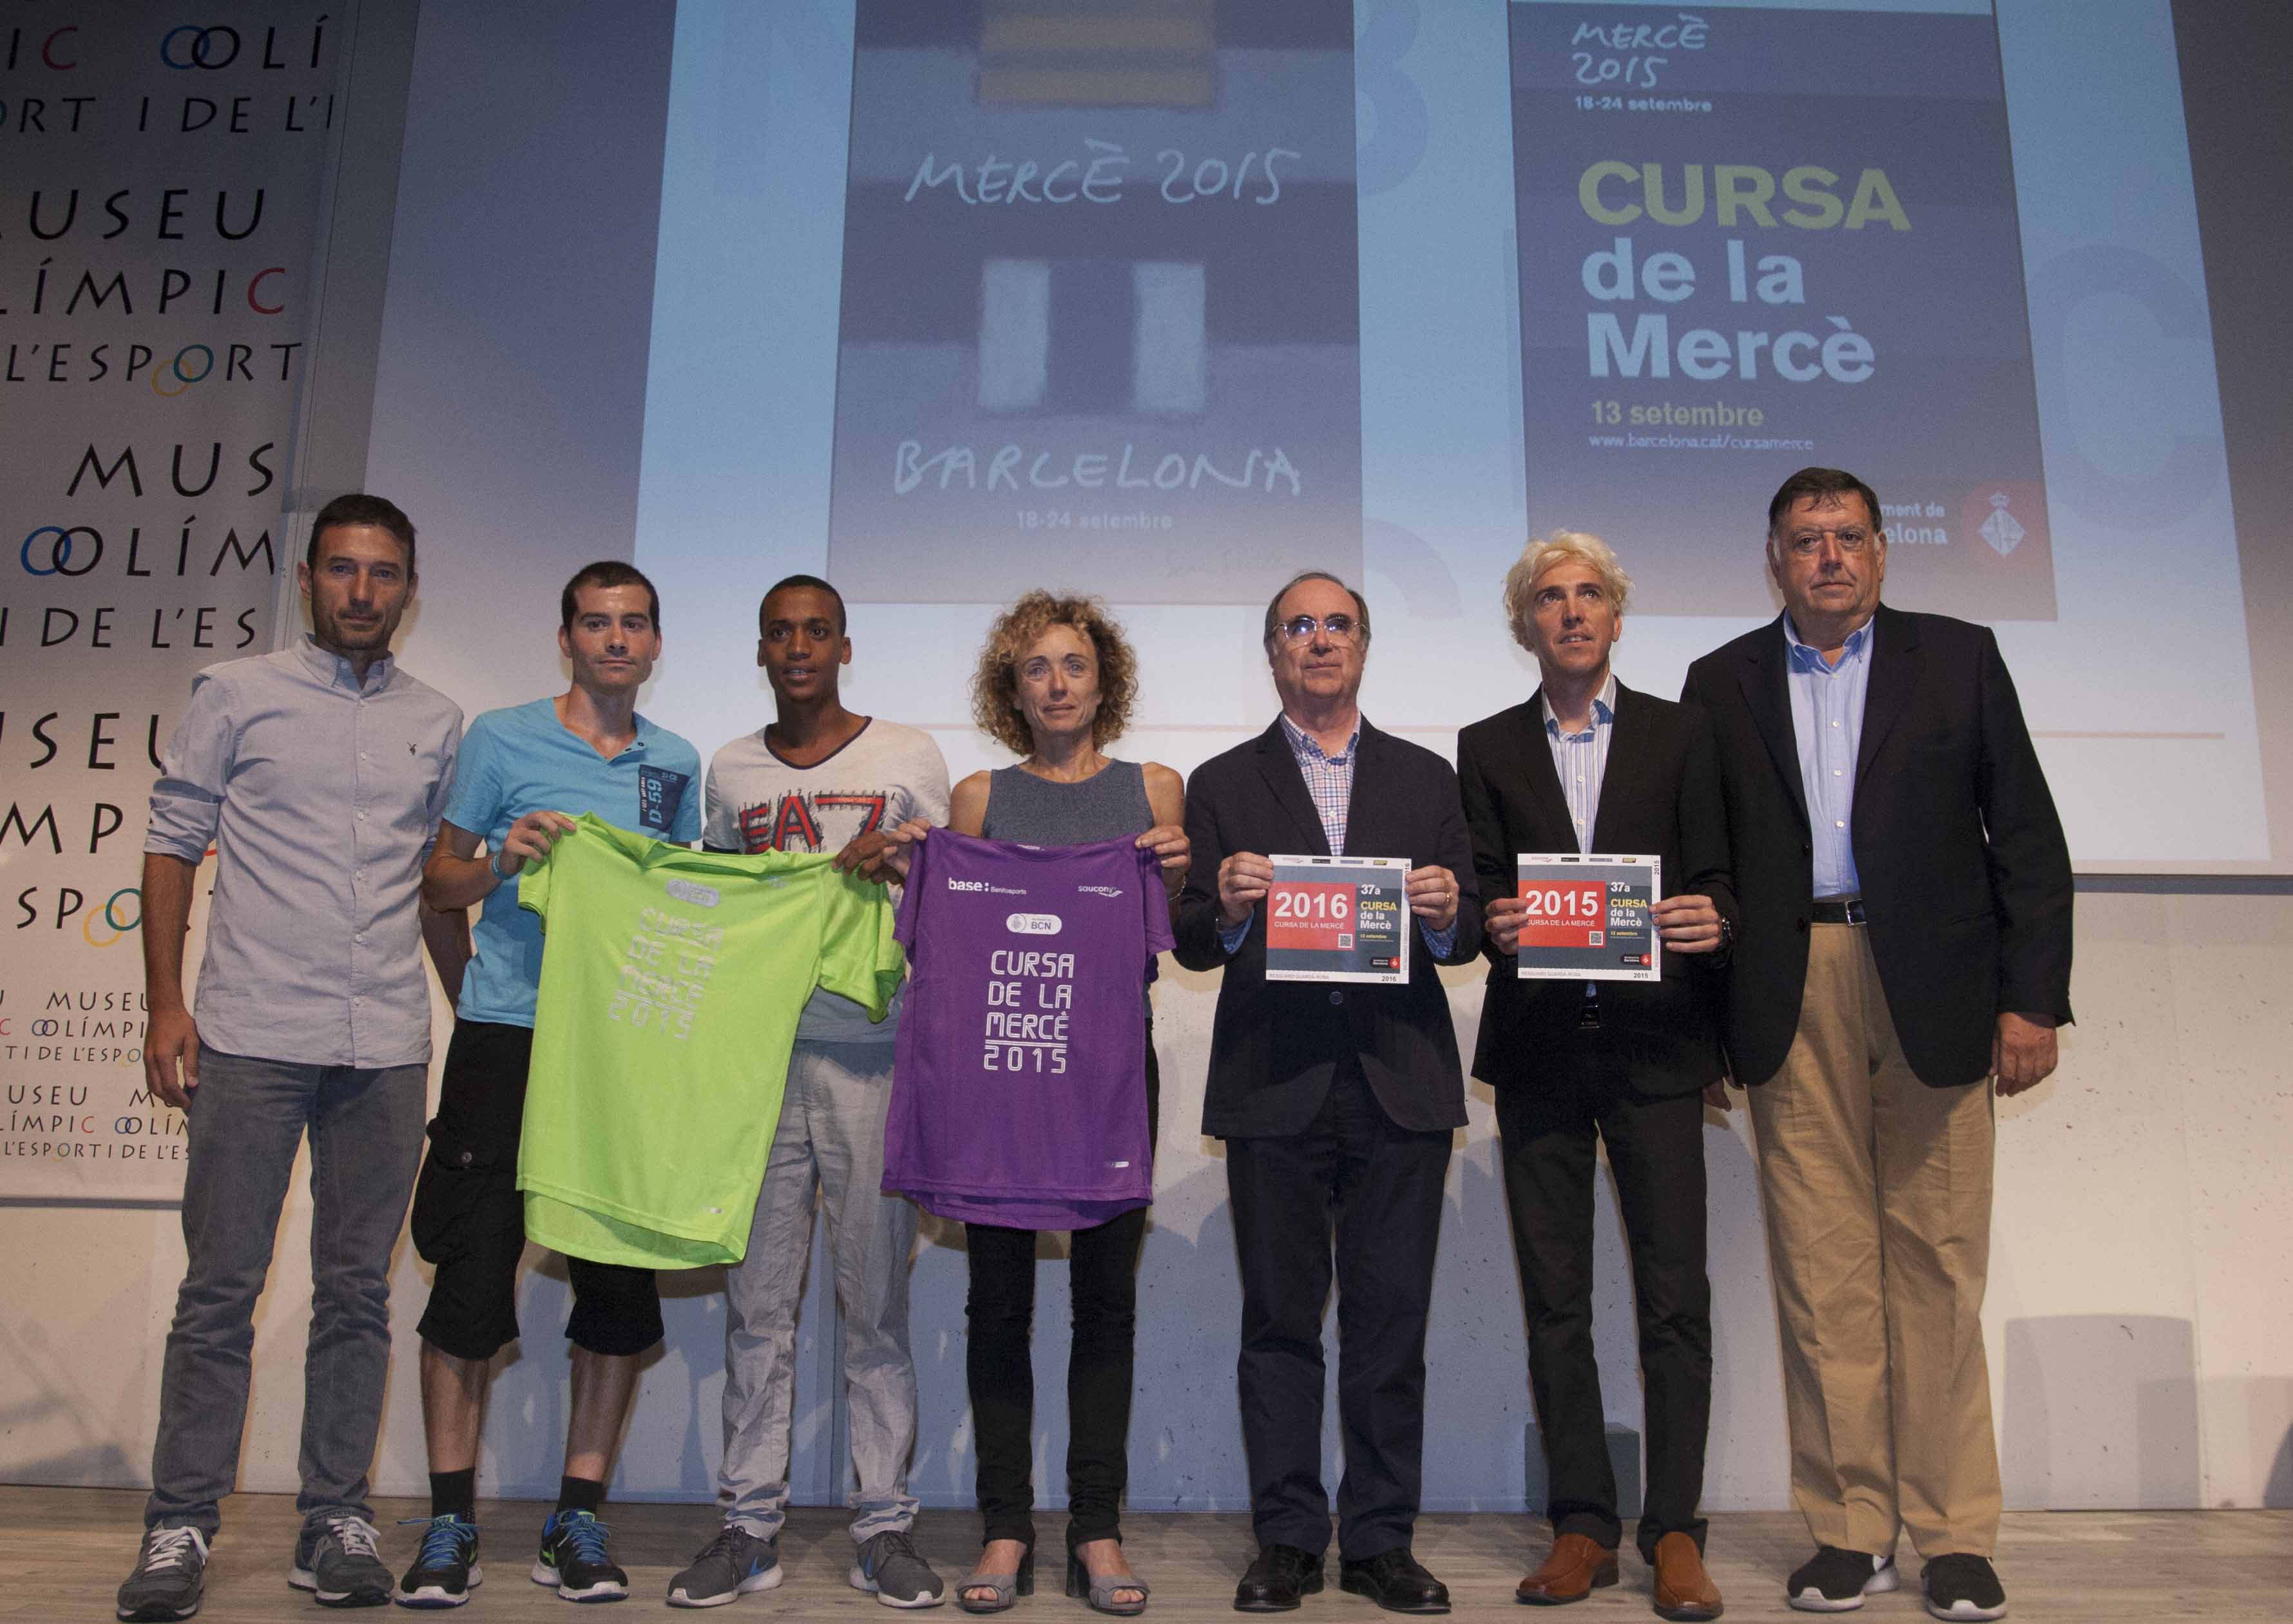 Cursa_Merce_2015-Marta-Carranza